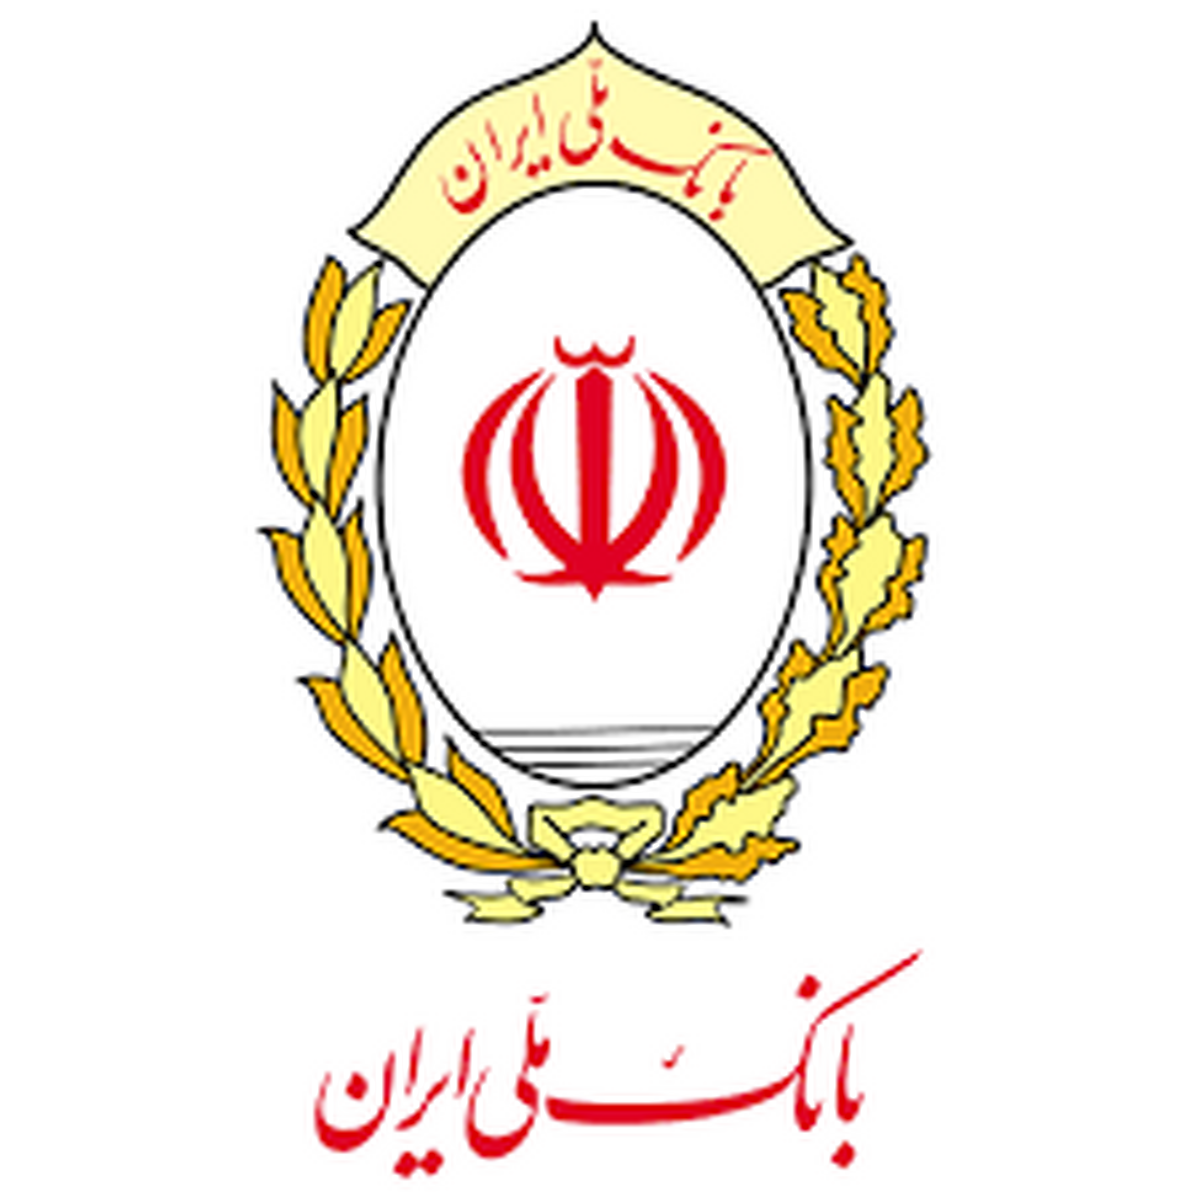 انتشار گواهی سپرده خاص بانک ملی ایران